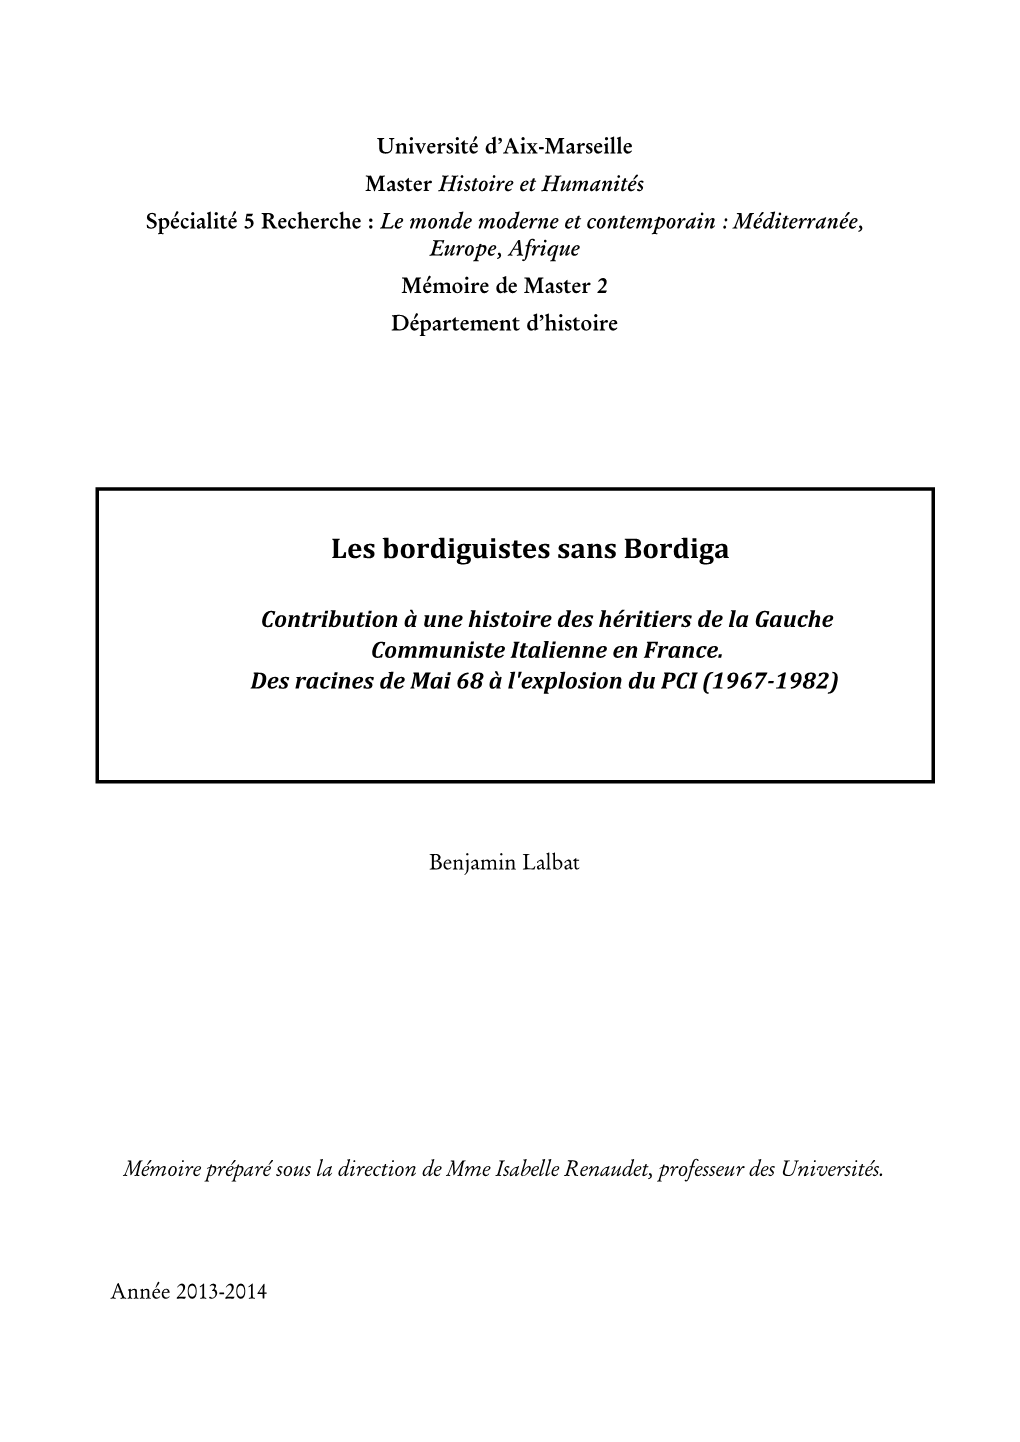 Benjamin Lalbat, Les Bordiguistes Sans Bordiga : Contribution À Une Histoire Des Héritiers De La Gauche Communiste